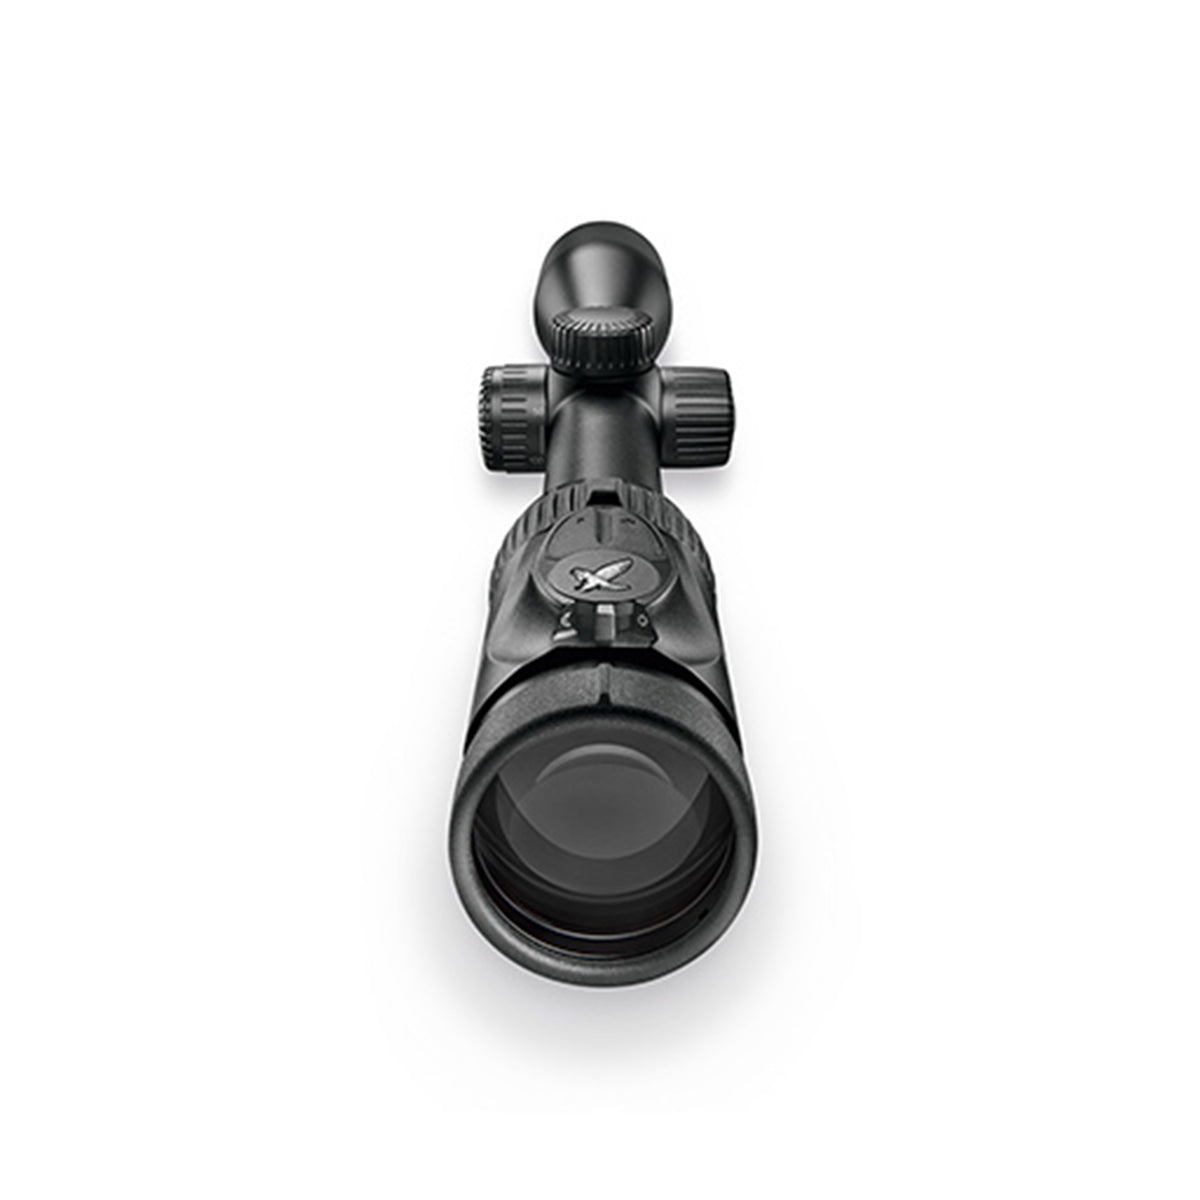 Swarovski Z8i 2.3-18x56 4A-I Riflescope in Swarovski Z8i 2.3-18x56 4A-I Riflescope by Swarovski Optik | Optics - goHUNT Shop by GOHUNT | Swarovski Optik - GOHUNT Shop